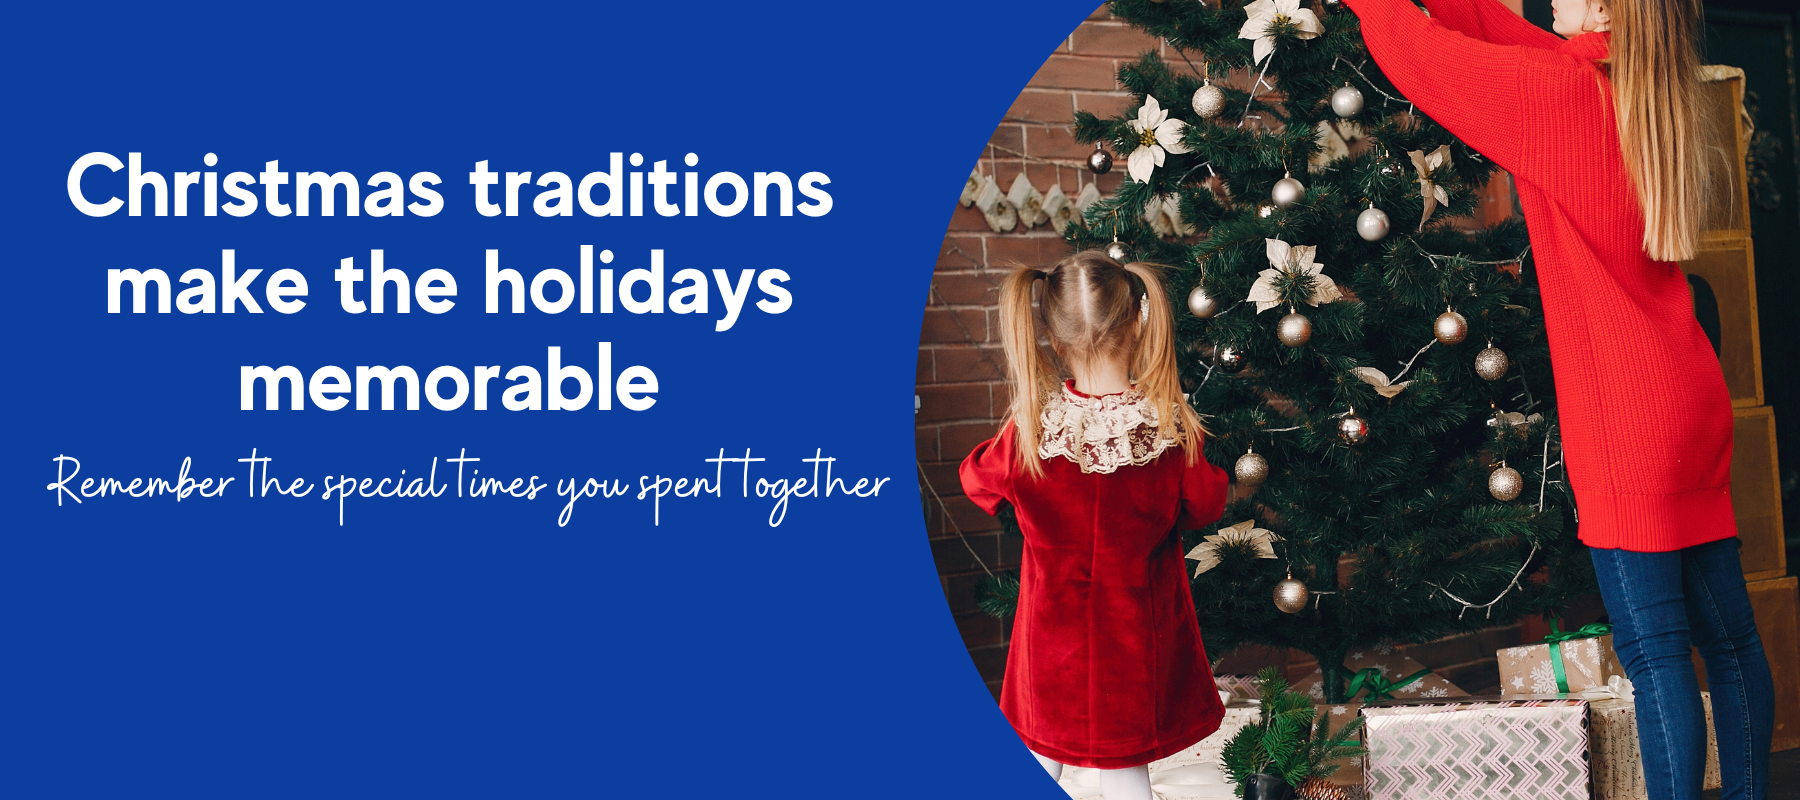 Christmas traditions make the holidays memorable